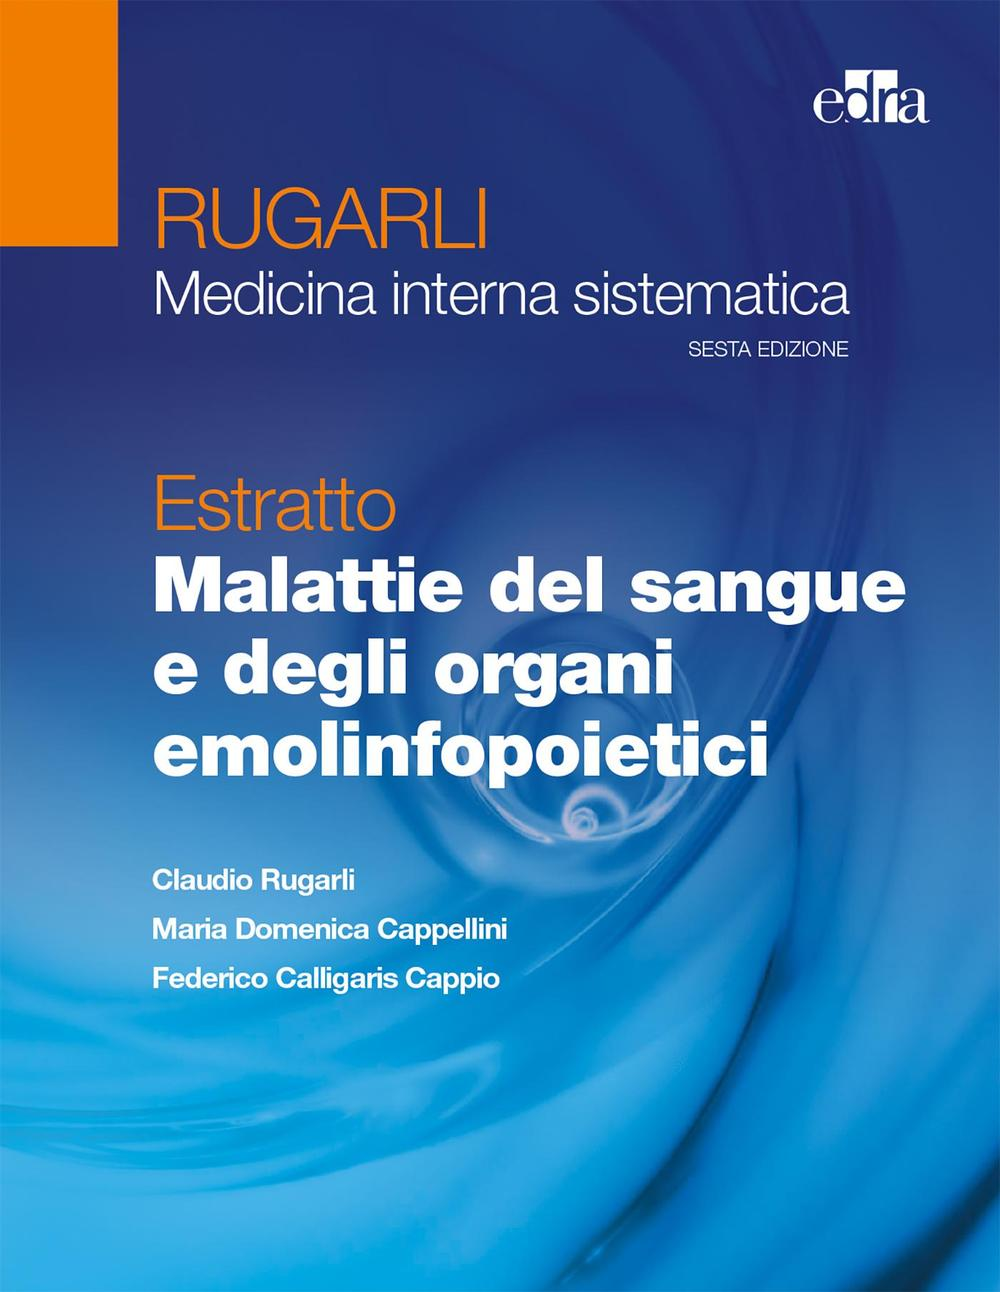 Image of Rugarli. Medicina interna sistematica. Estratto: Malattie del sangue e degli organi emolinfopoietici